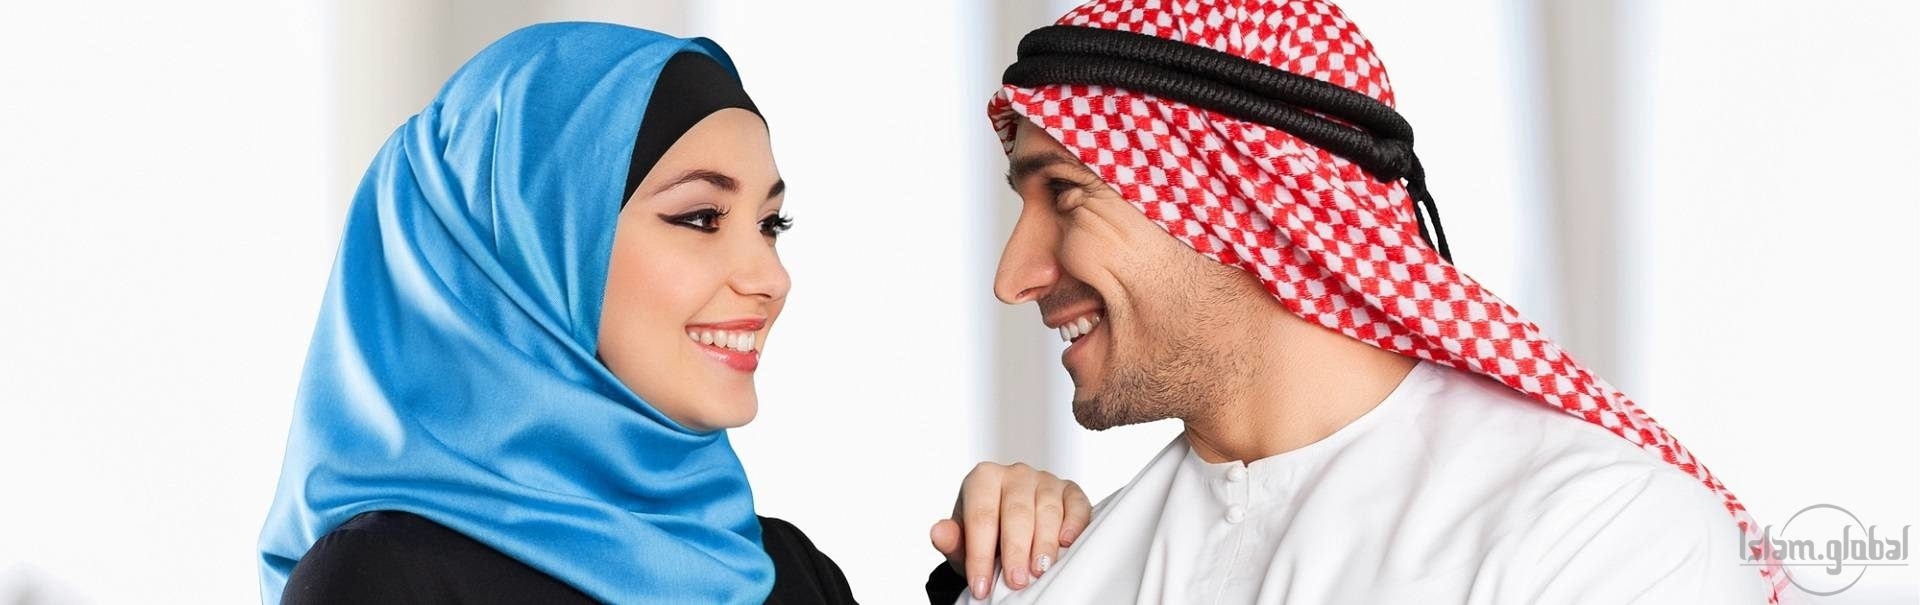 Интимные отношения и ислам: правила половой жизни муcульман | Islam.Global